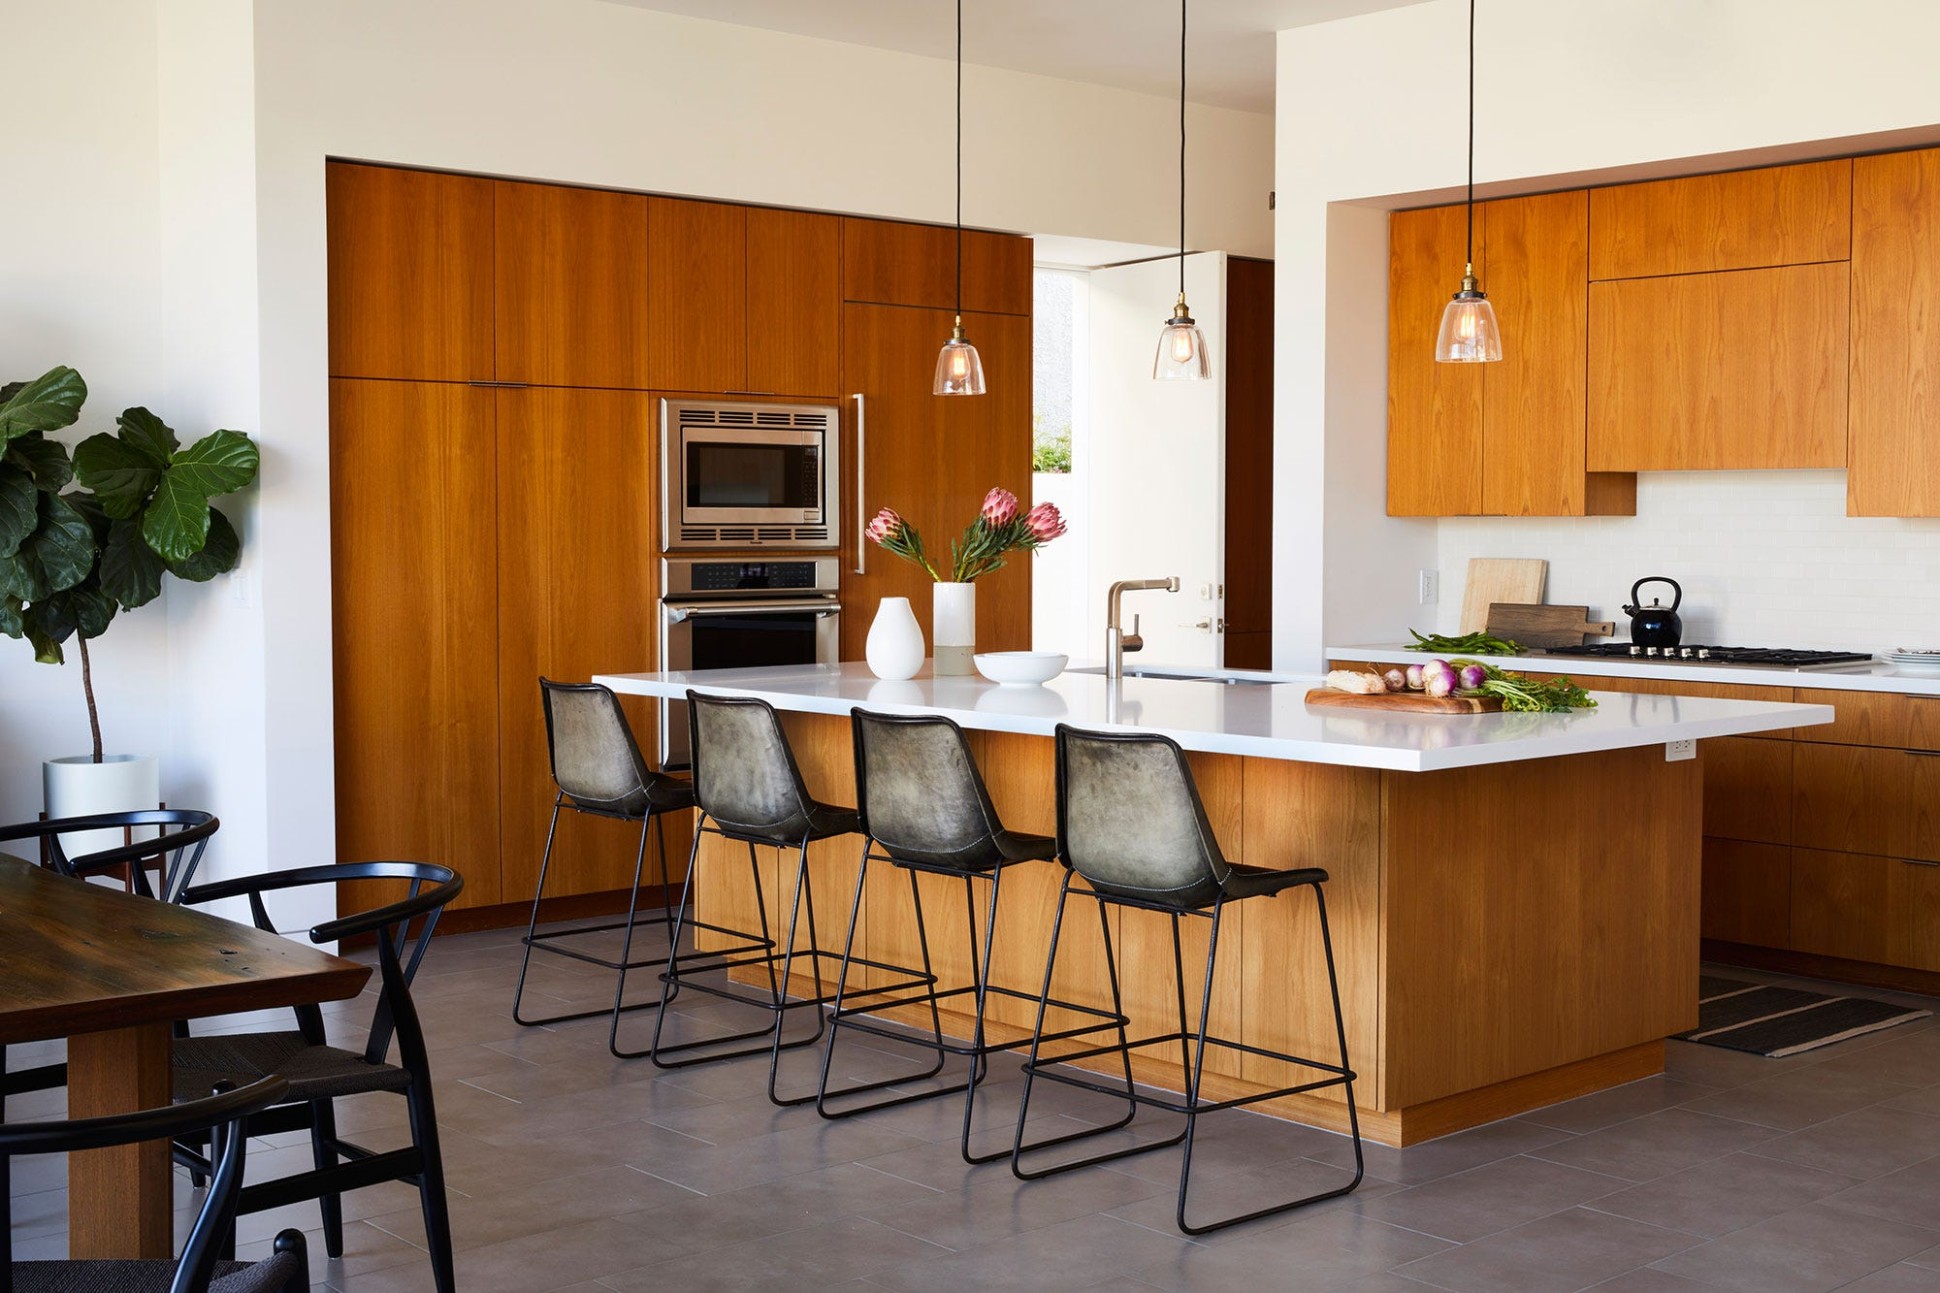 4 Best Modern Kitchen Cabinet Ideas - Chic Modern Cabinet Design - what are modern cabinets made of?